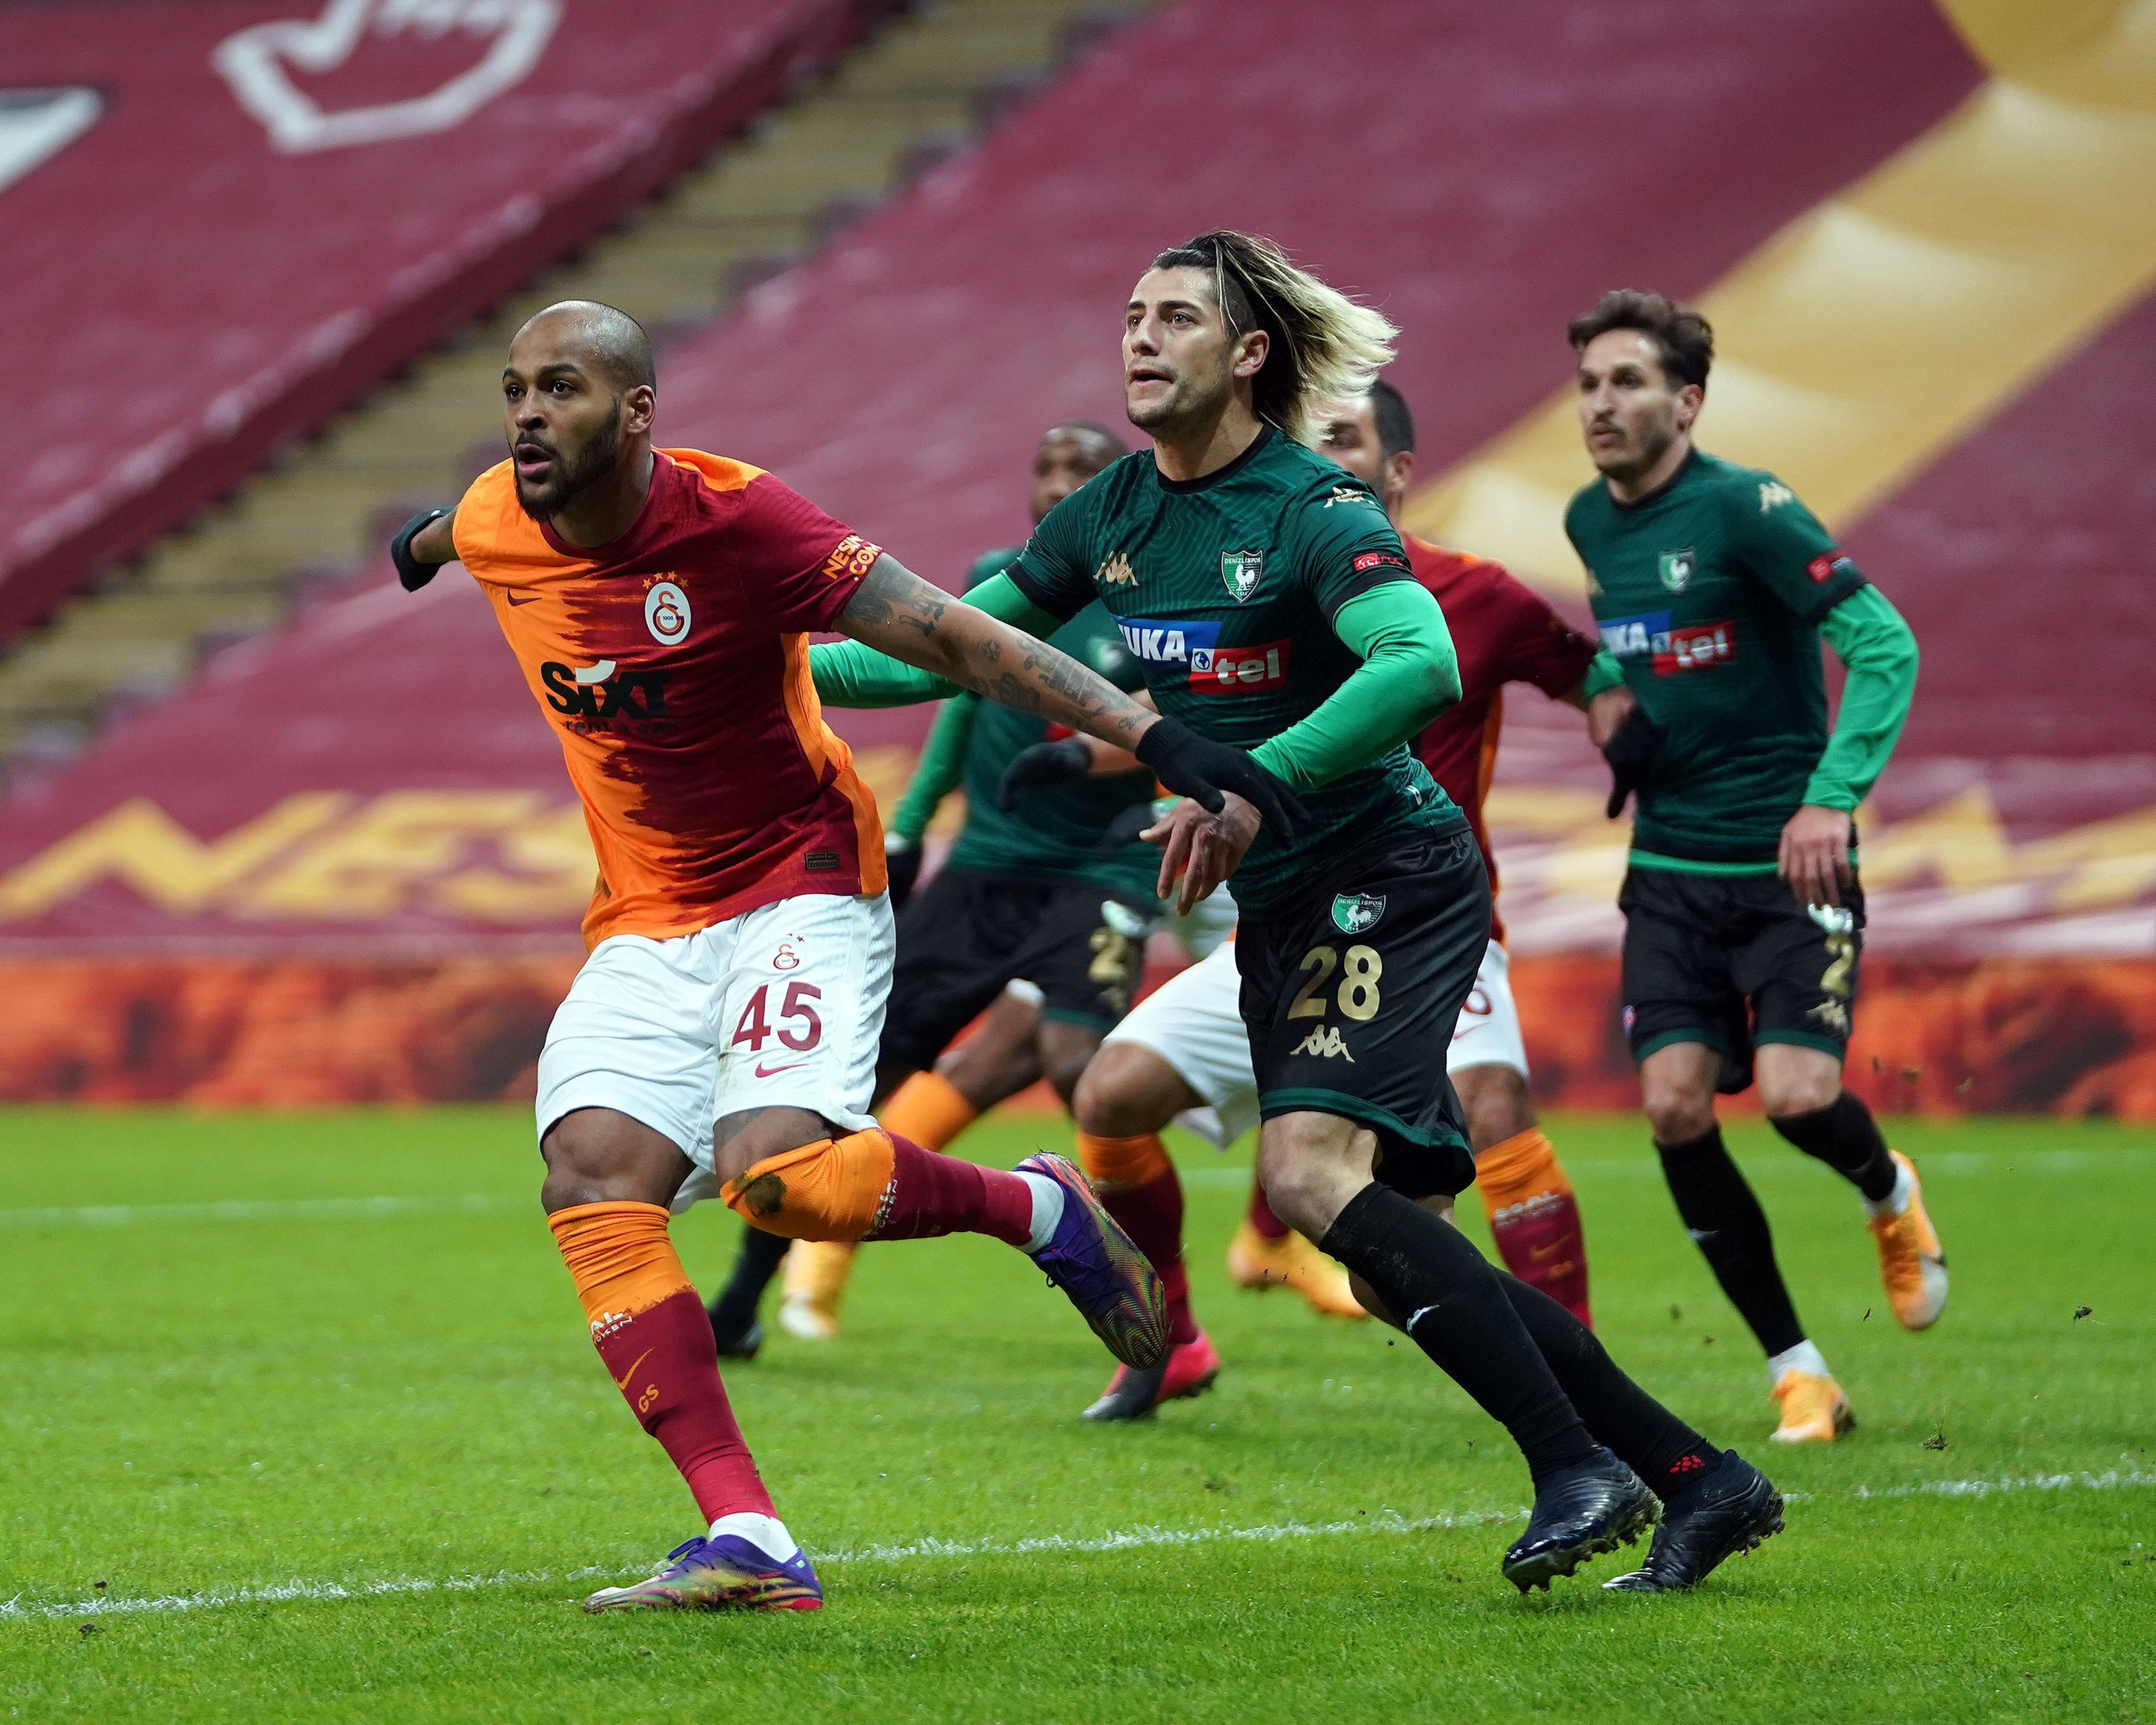 (ÖZET) Galatasaray - Denizlispor maç sonucu: 6-1